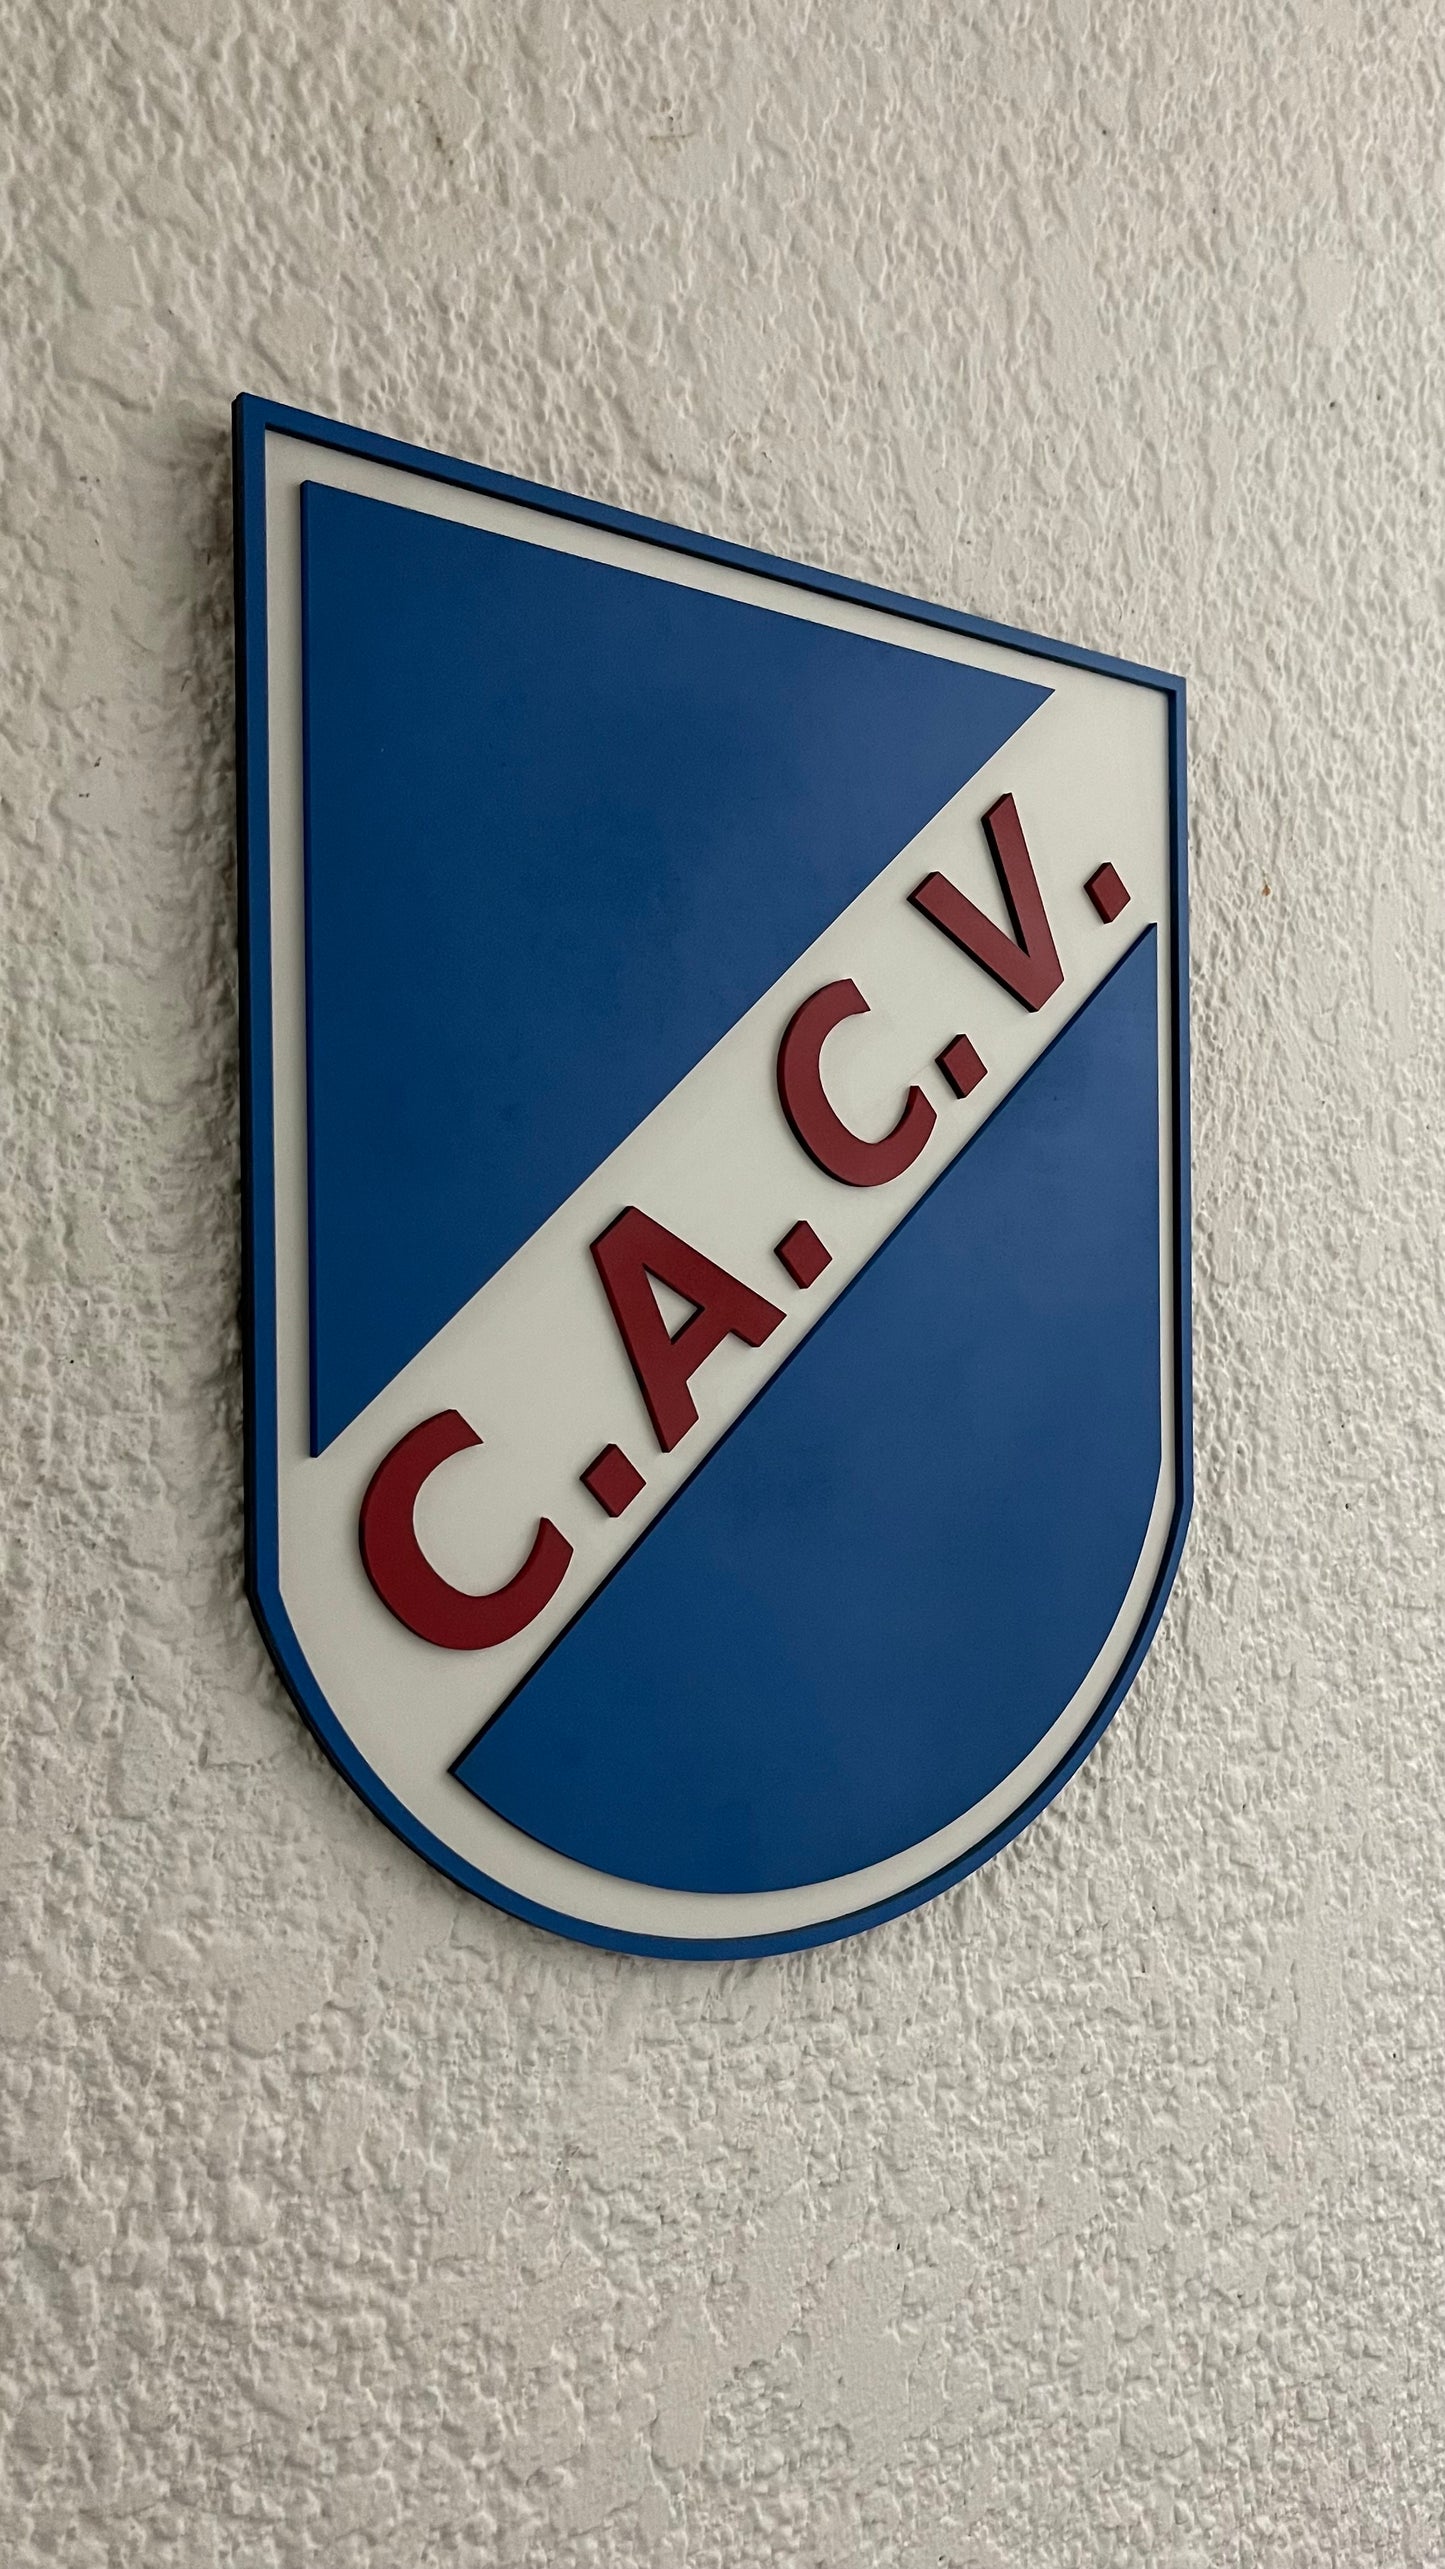 Club Atlético Colonia Valdense